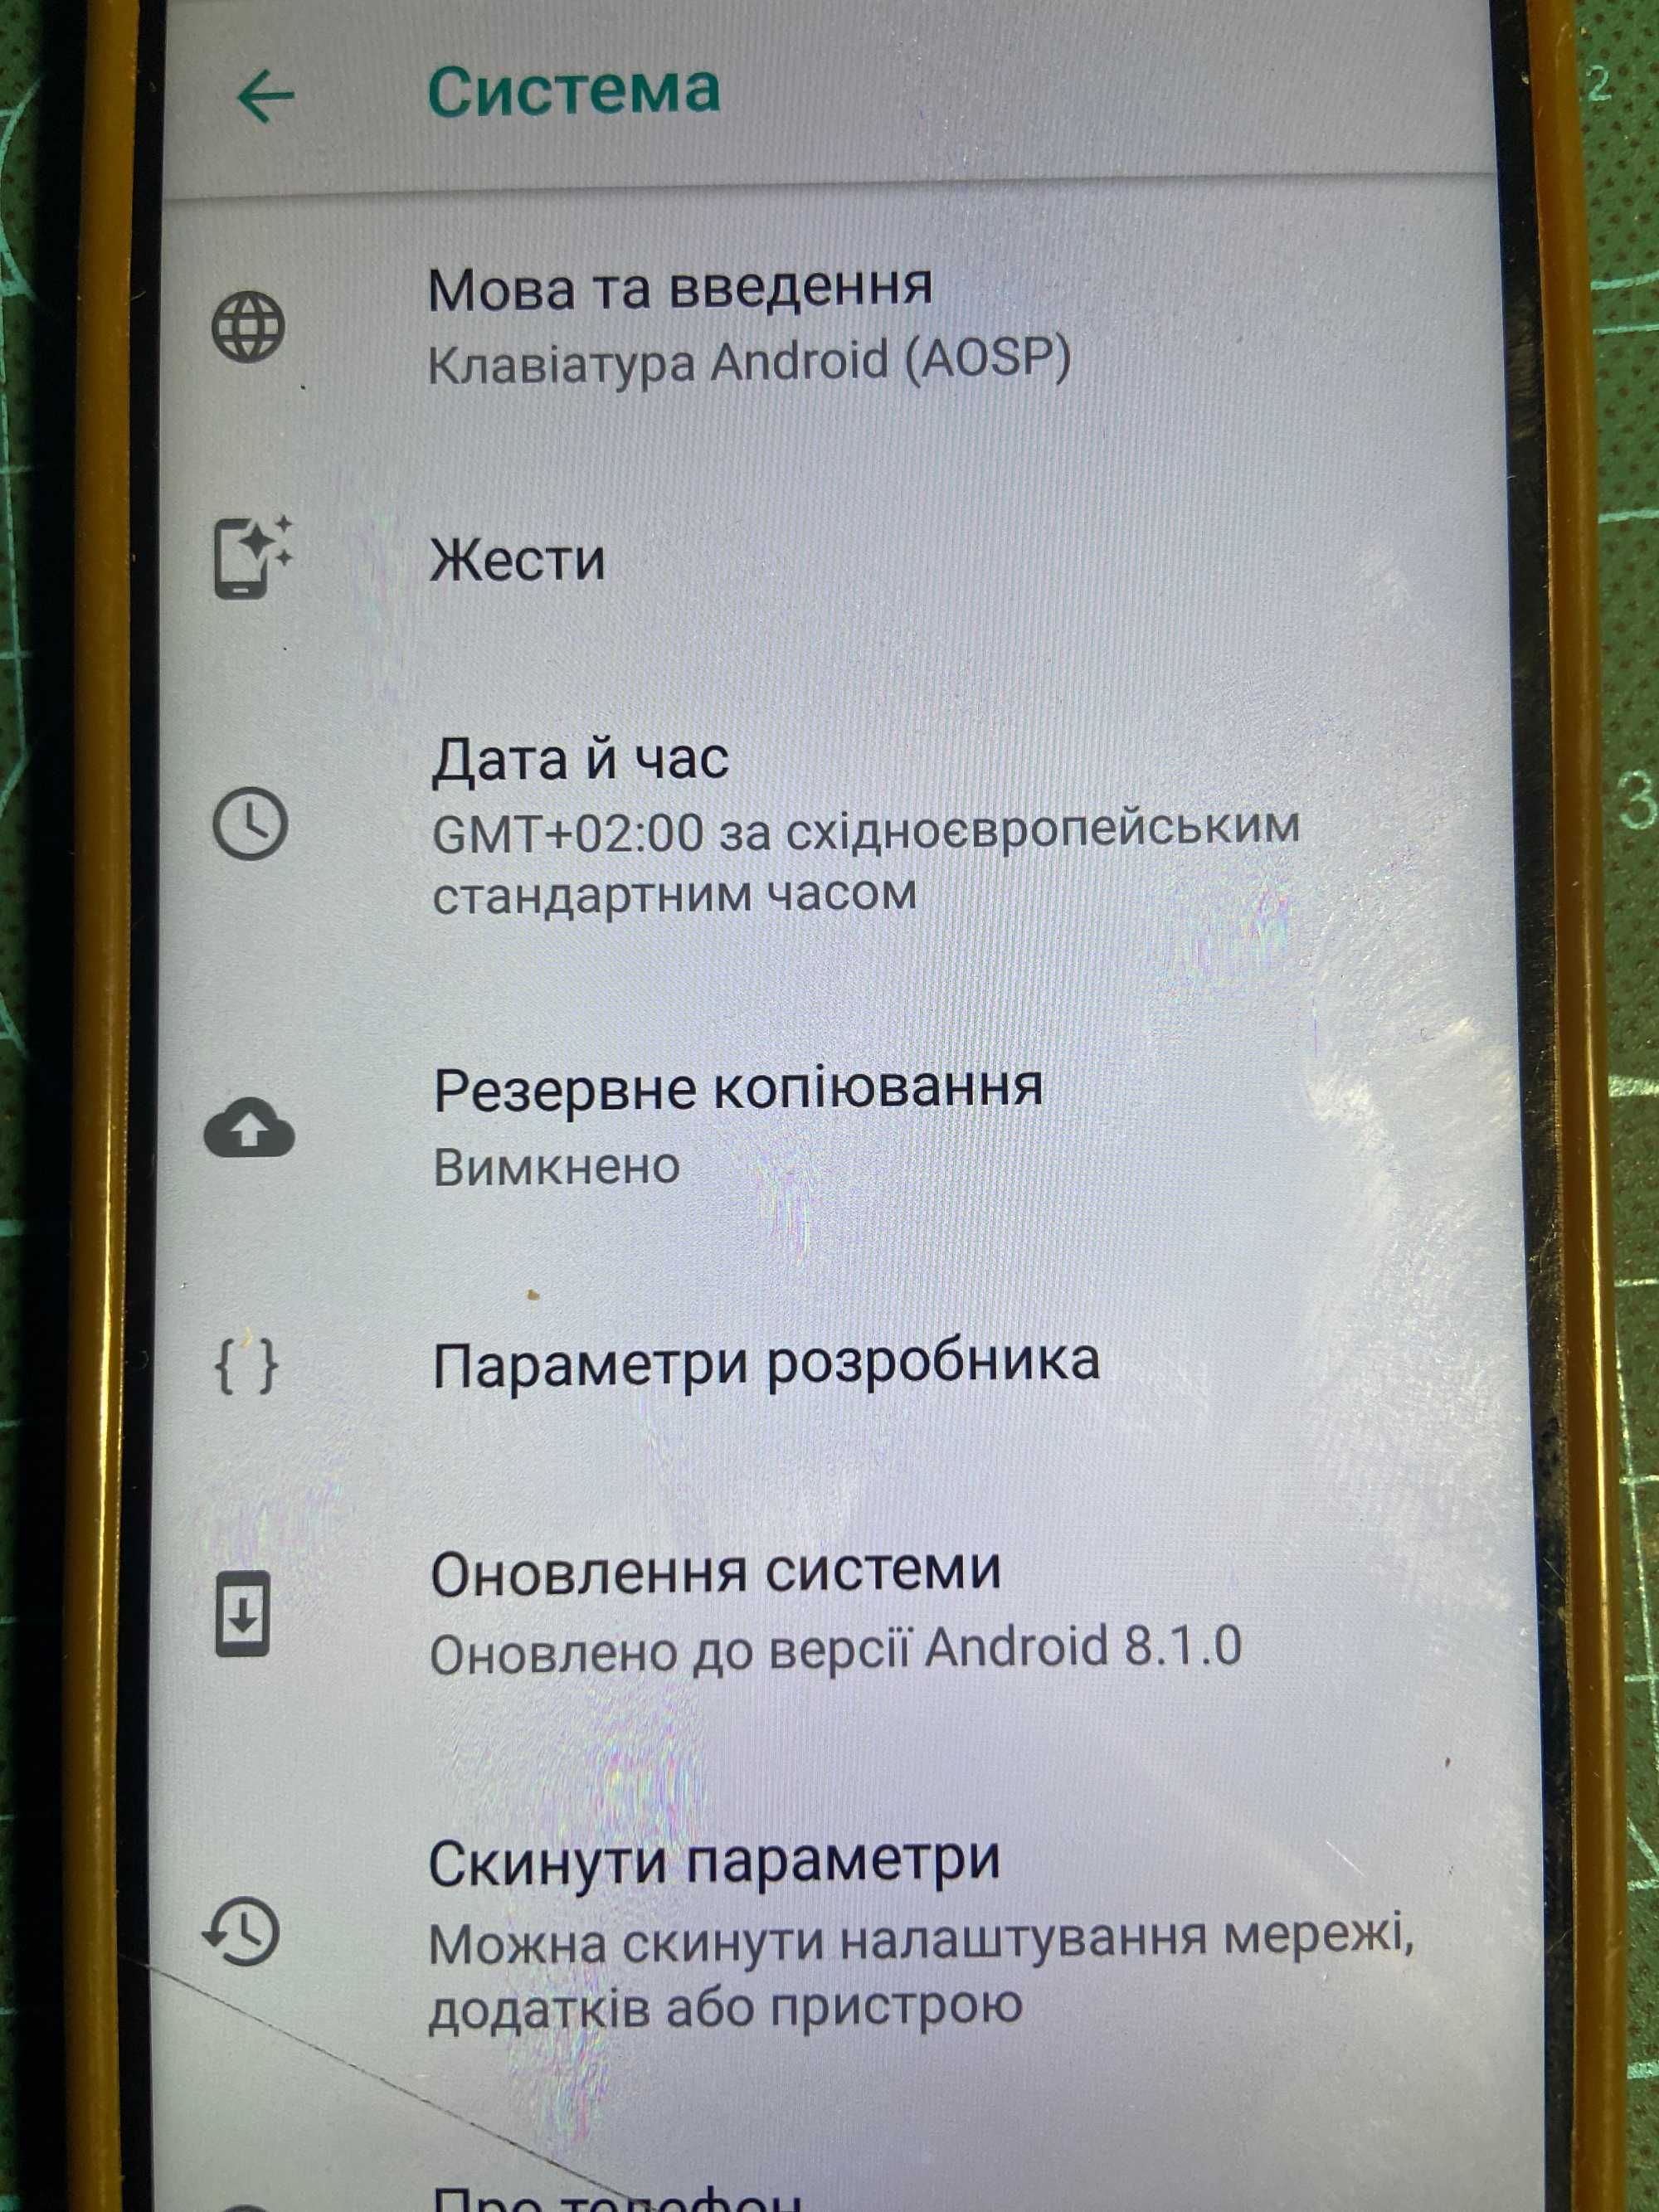 Продається телефон Mi 5 32 GB.